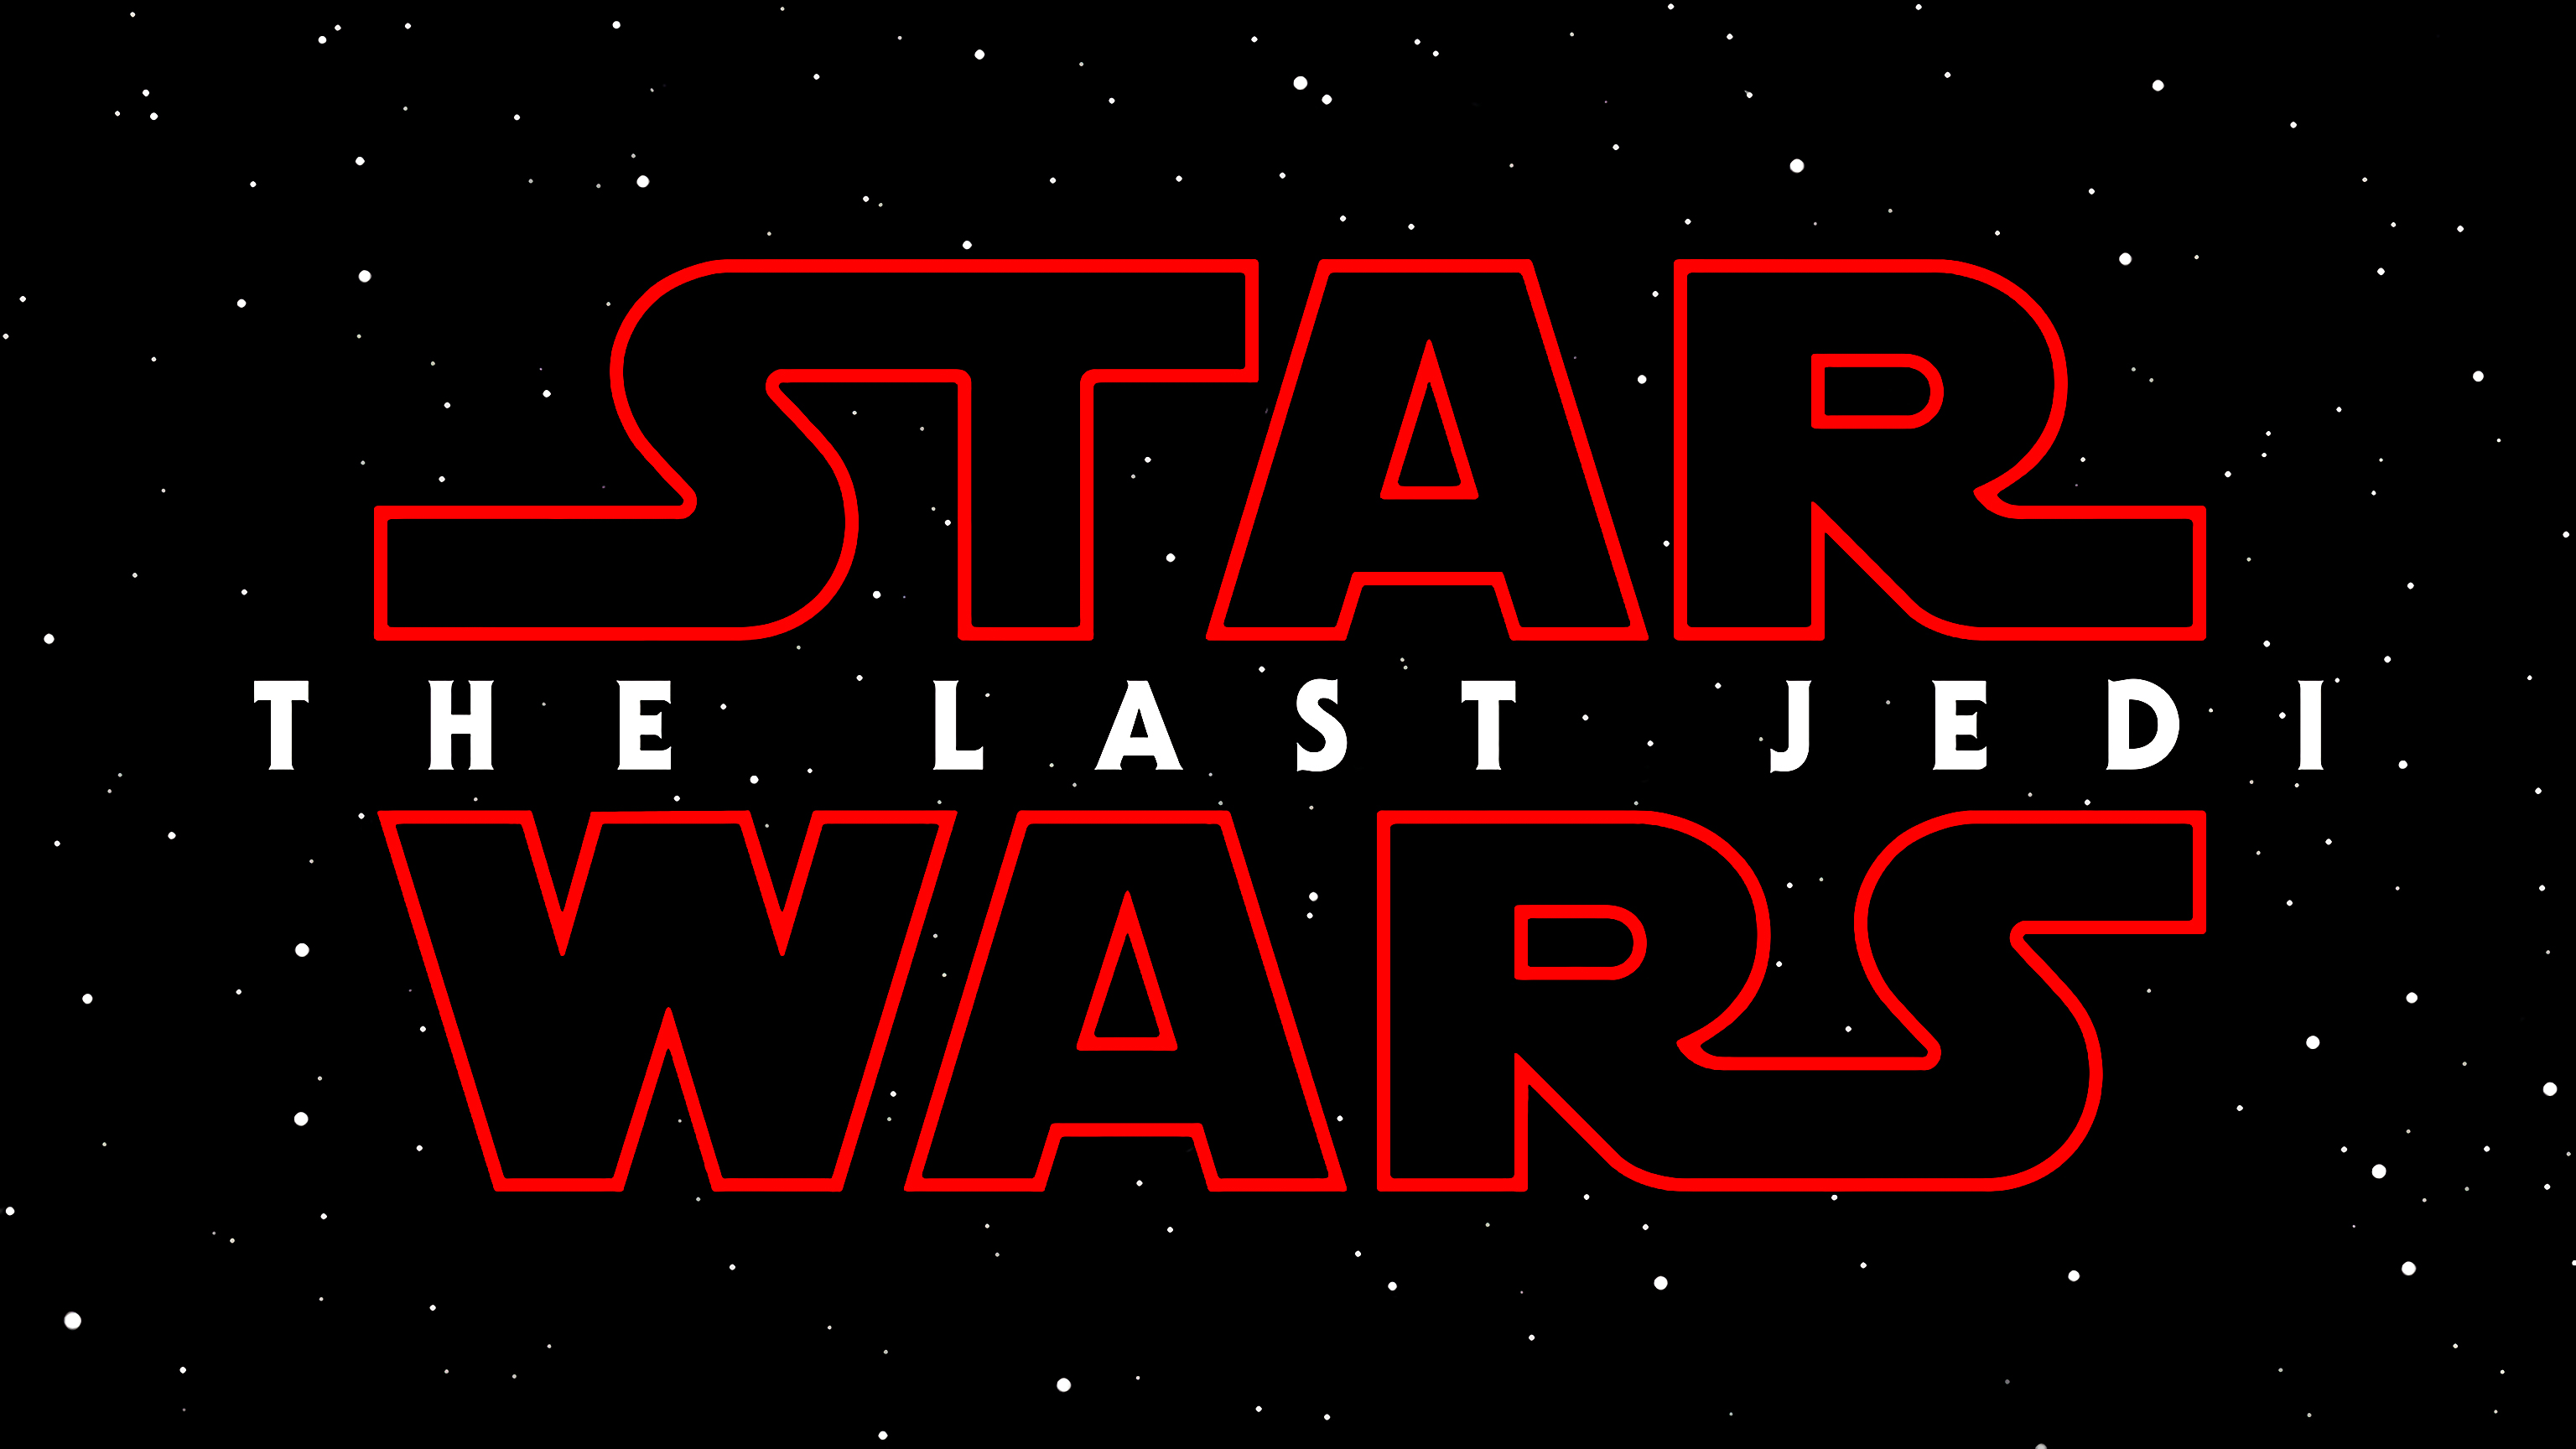 Star Wars, Star Wars: The Last Jedi, Typography Wallpaper